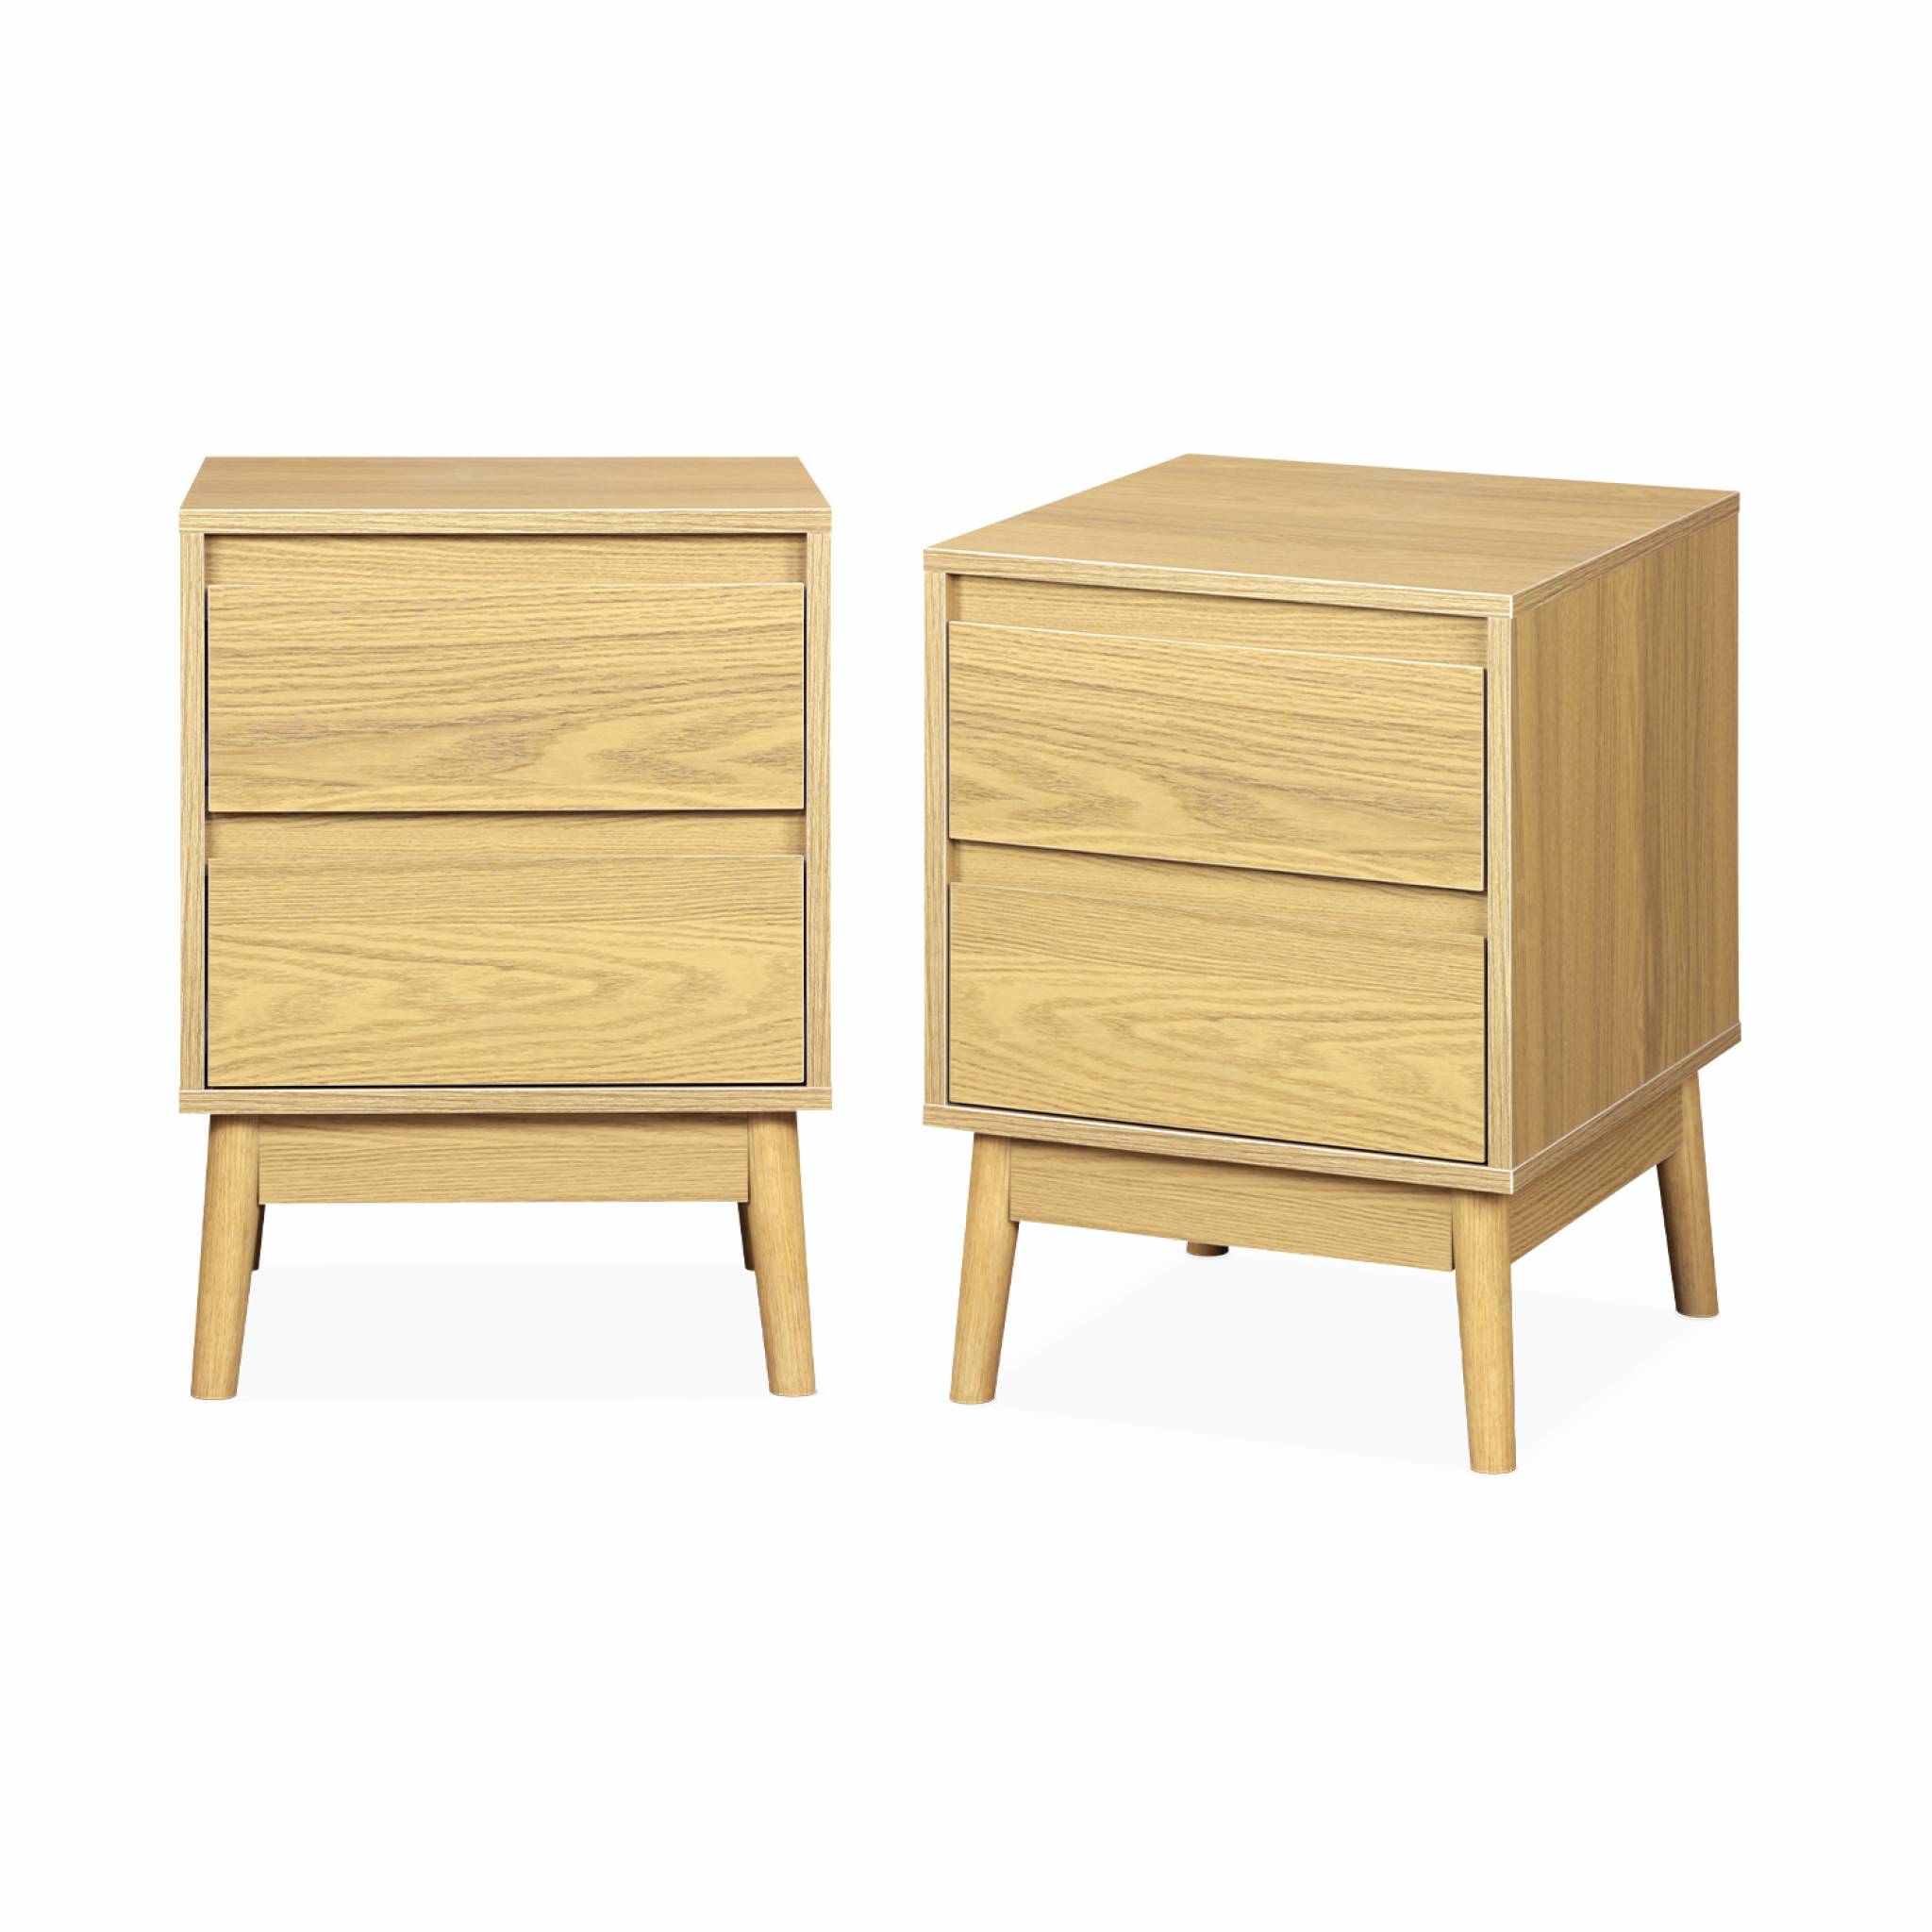 2 tables de chevet décor bois, deux tiroirs